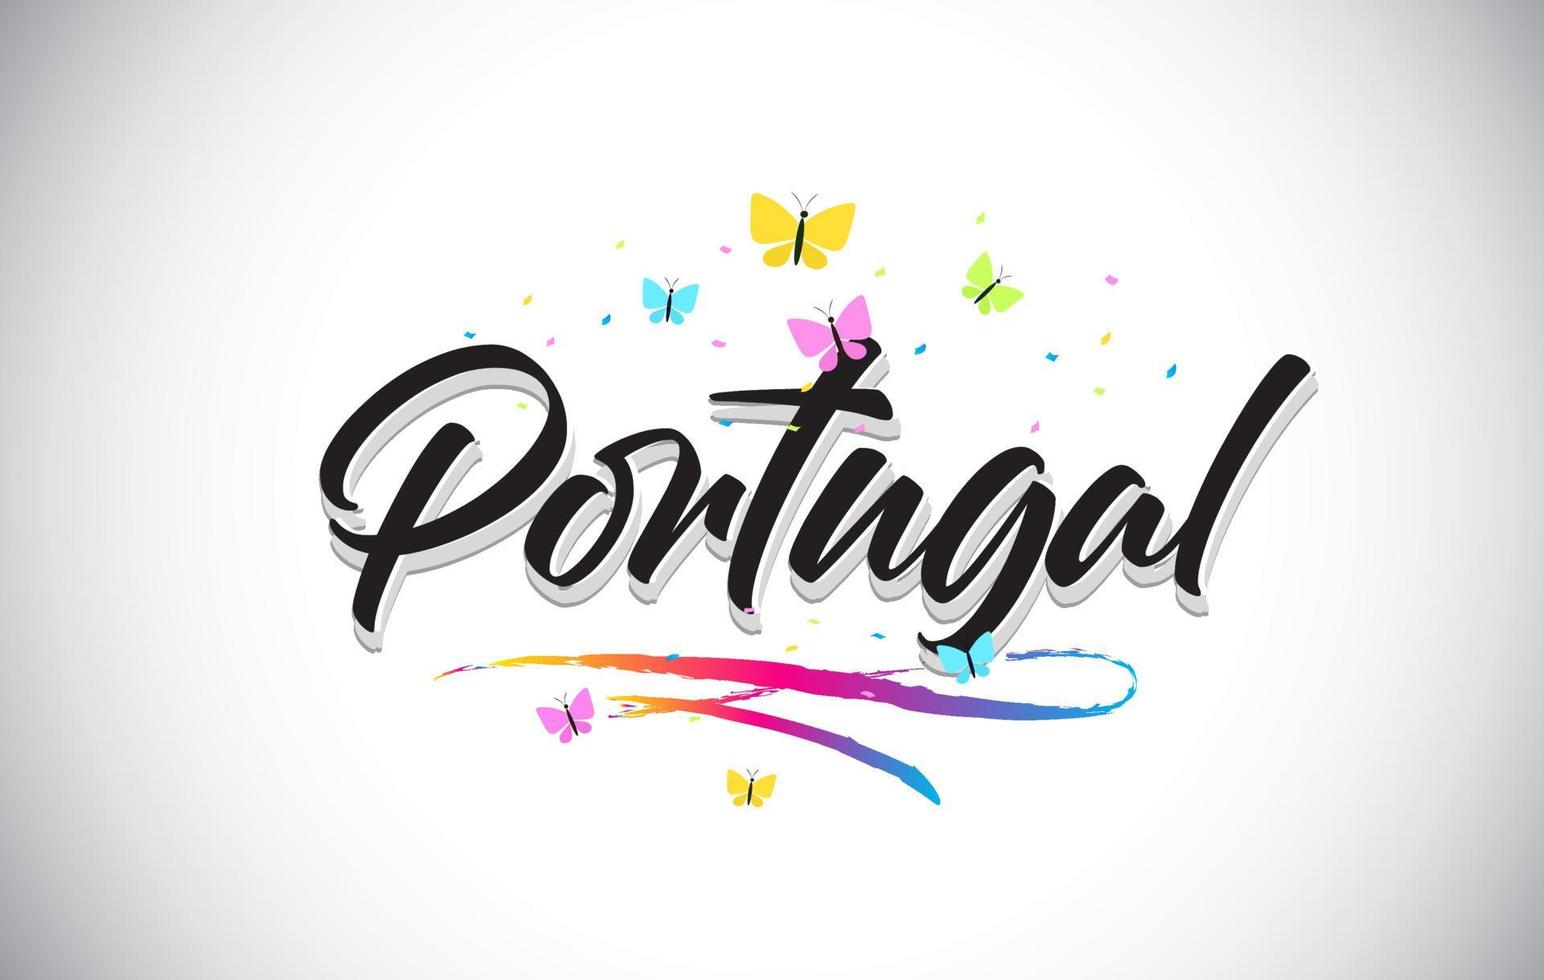 testo di parola vettoriale scritto a mano del Portogallo con farfalle e swoosh colorato.